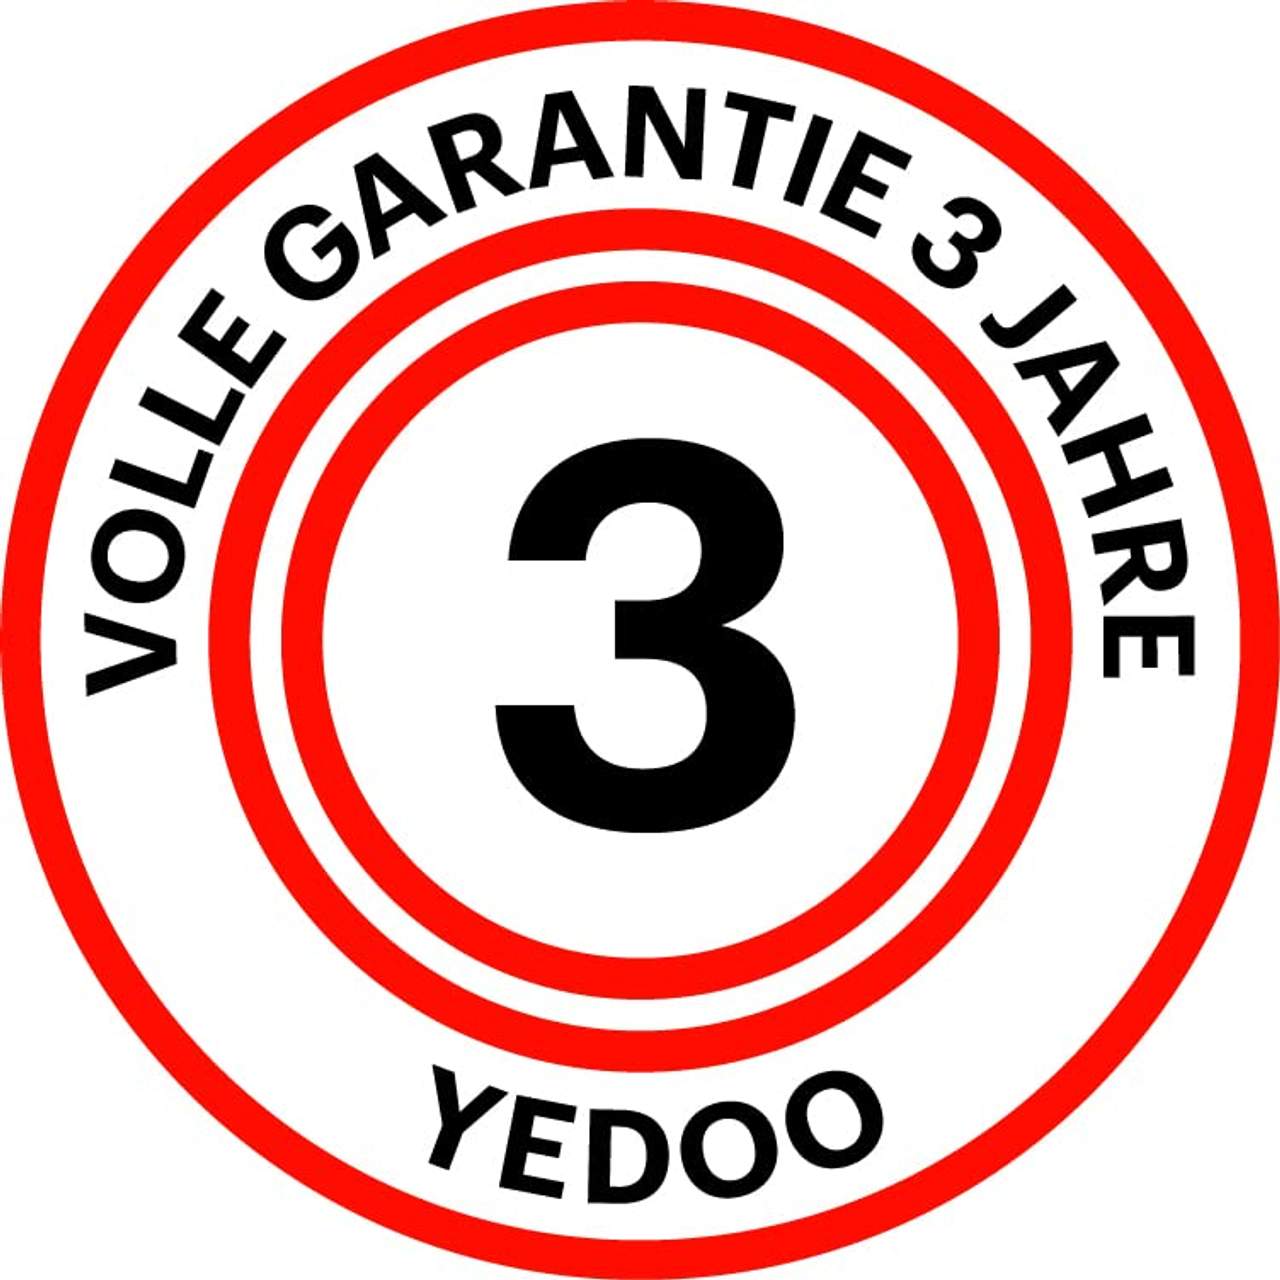 Yedoo S2016 Disc Tretroller